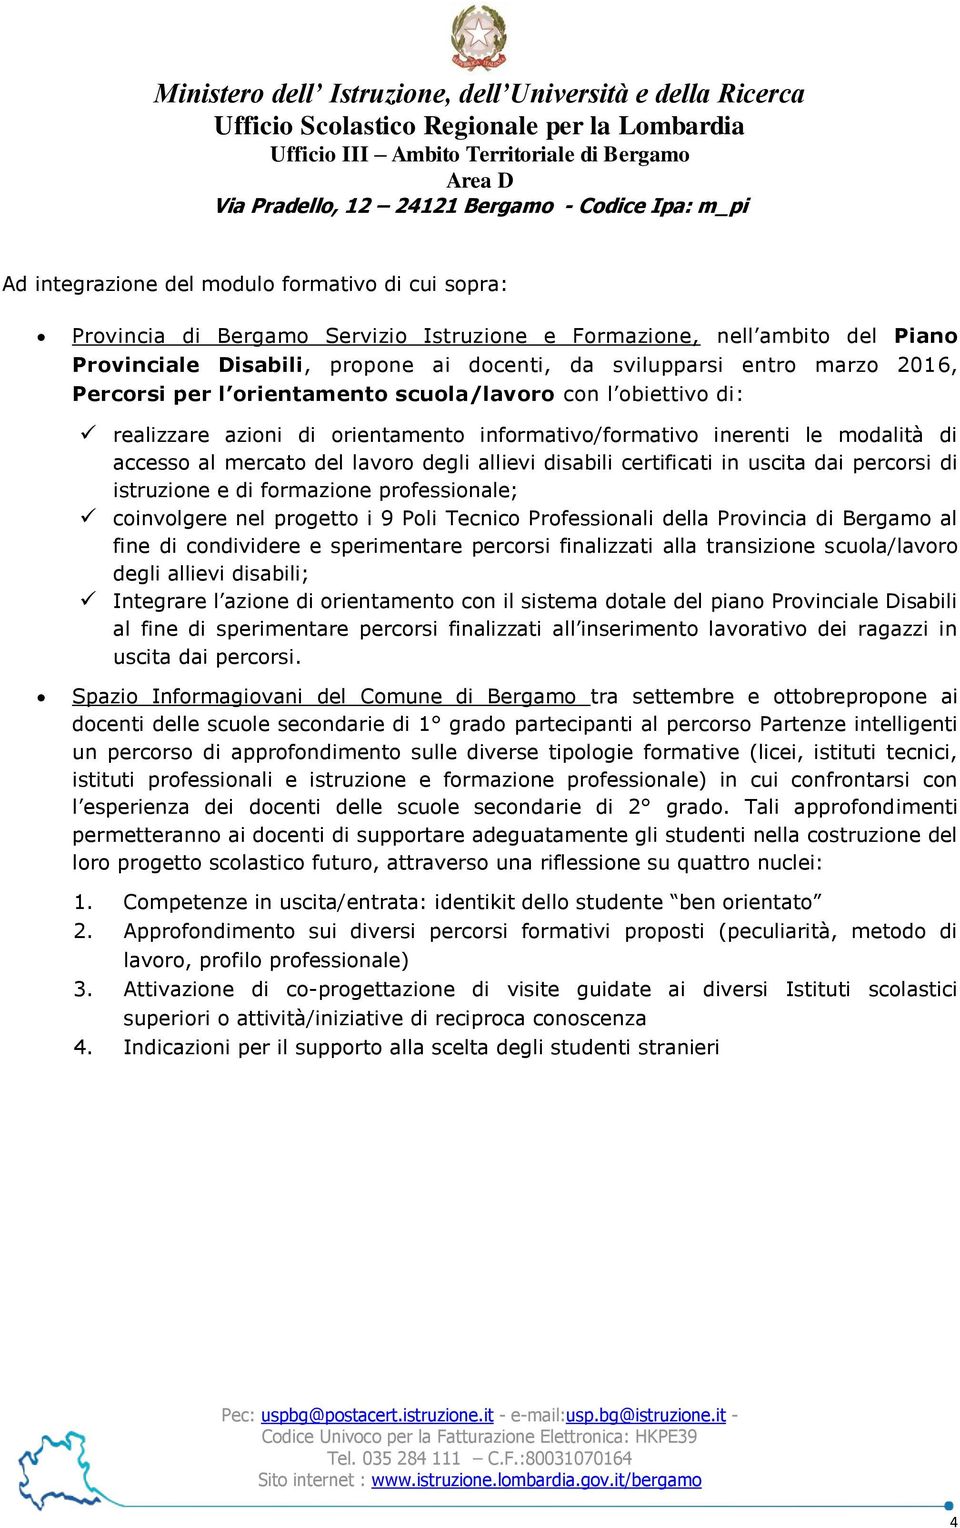 disabili certificati in uscita dai percorsi di istruzione e di formazione professionale; coinvolgere nel progetto i 9 Poli Tecnico Professionali della Provincia di Bergamo al fine di condividere e